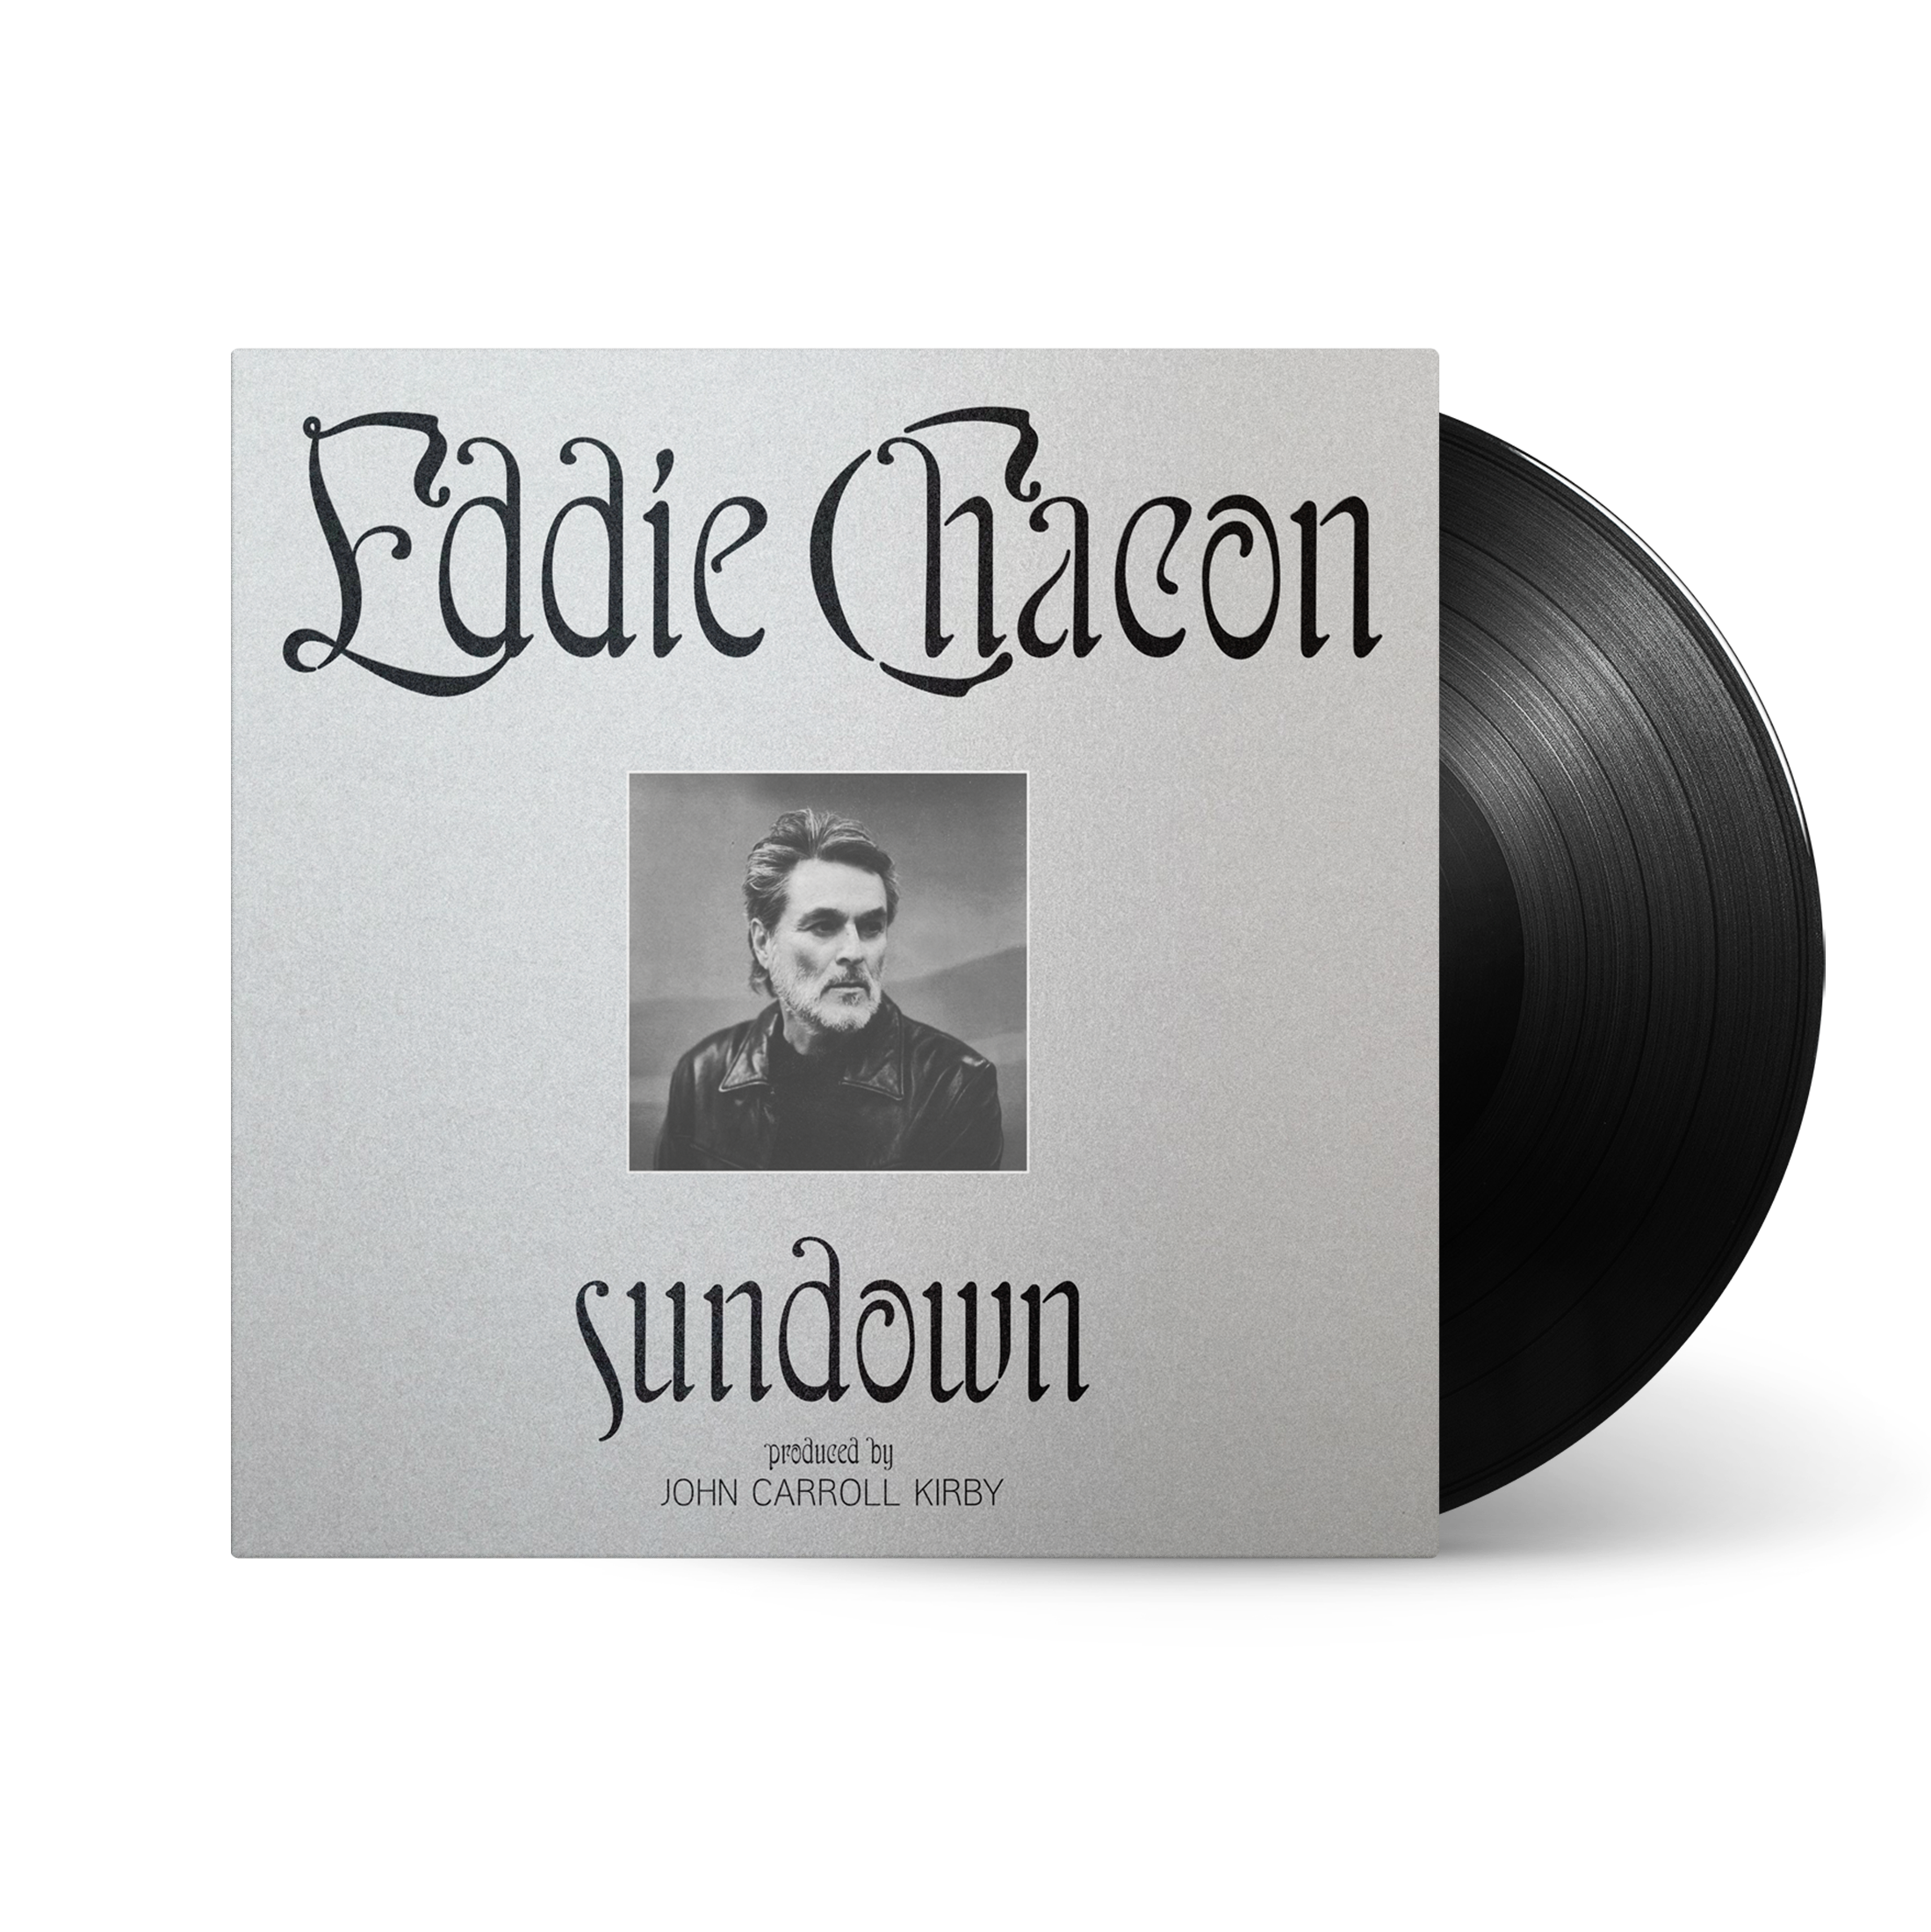 Eddie Chacon - Sundown: Vinyl LP